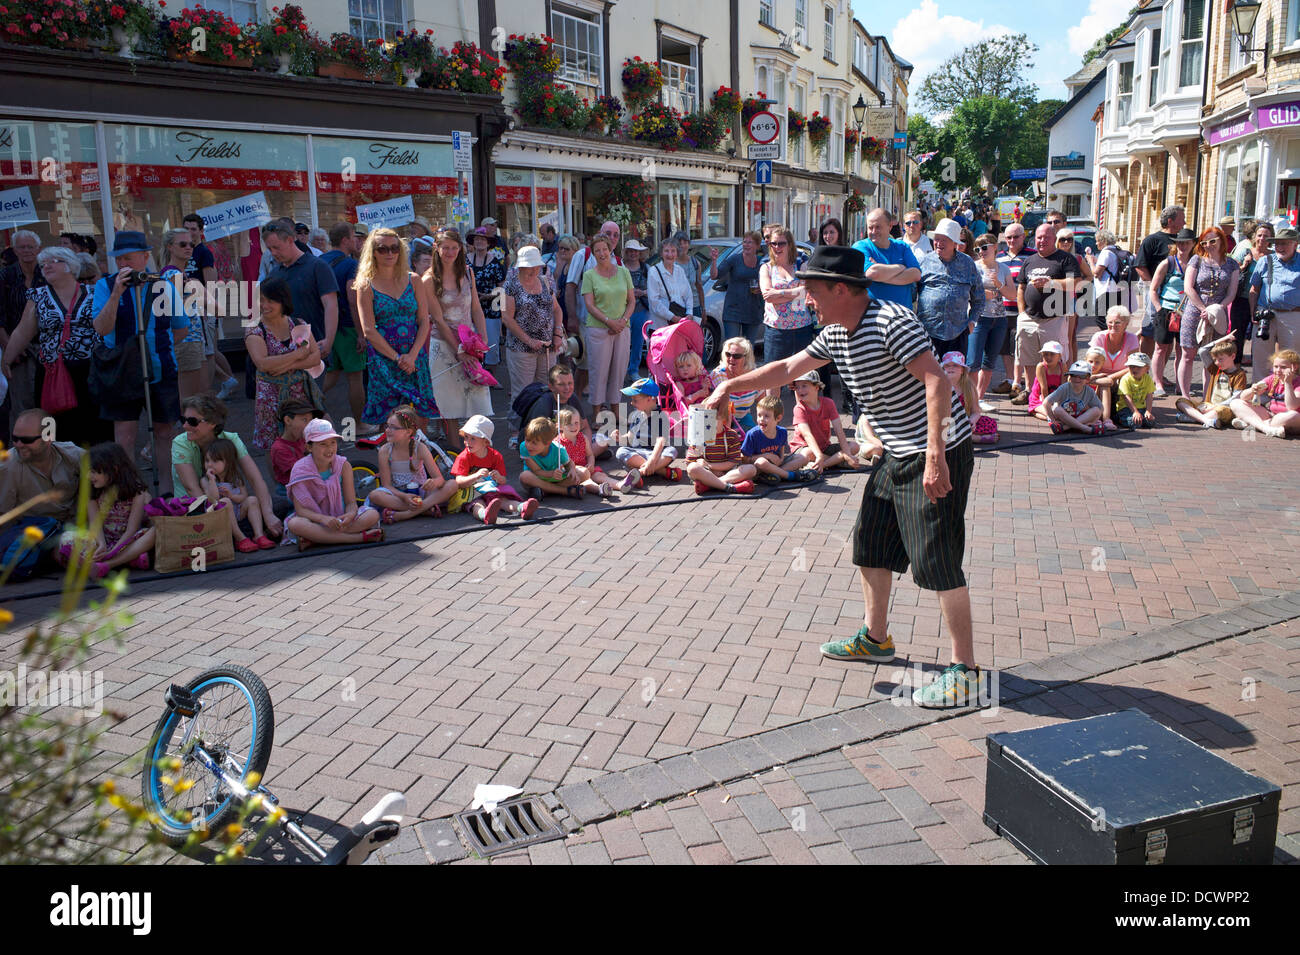 Un jongleur divertit les foules à Sidmouth Folk Festival, Devon, UK Banque D'Images